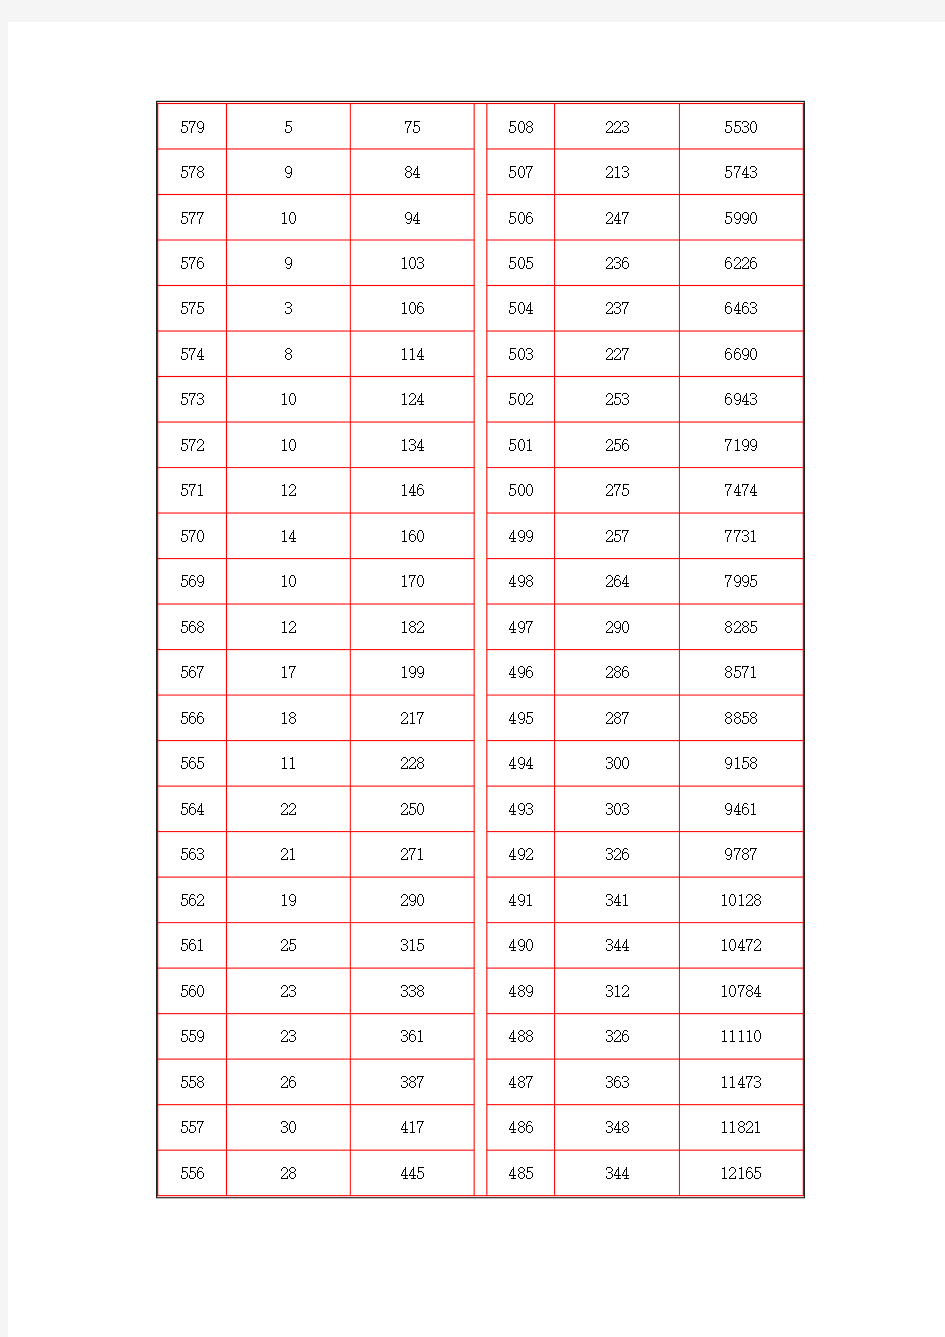 山西省高考成绩分段统计表